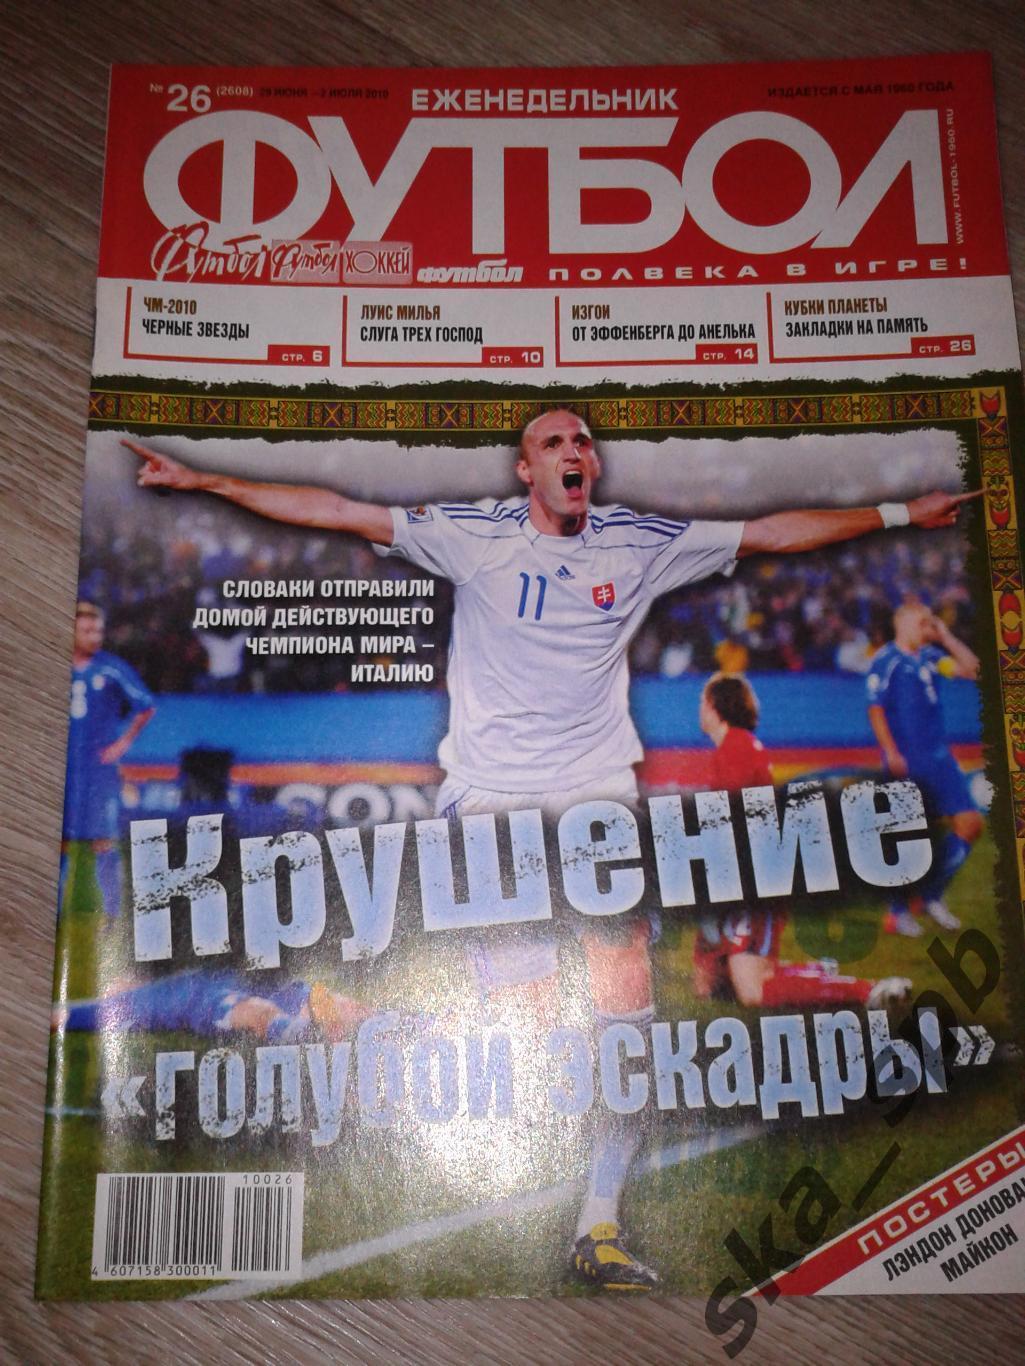 2010 Еженедельник Футбол №26